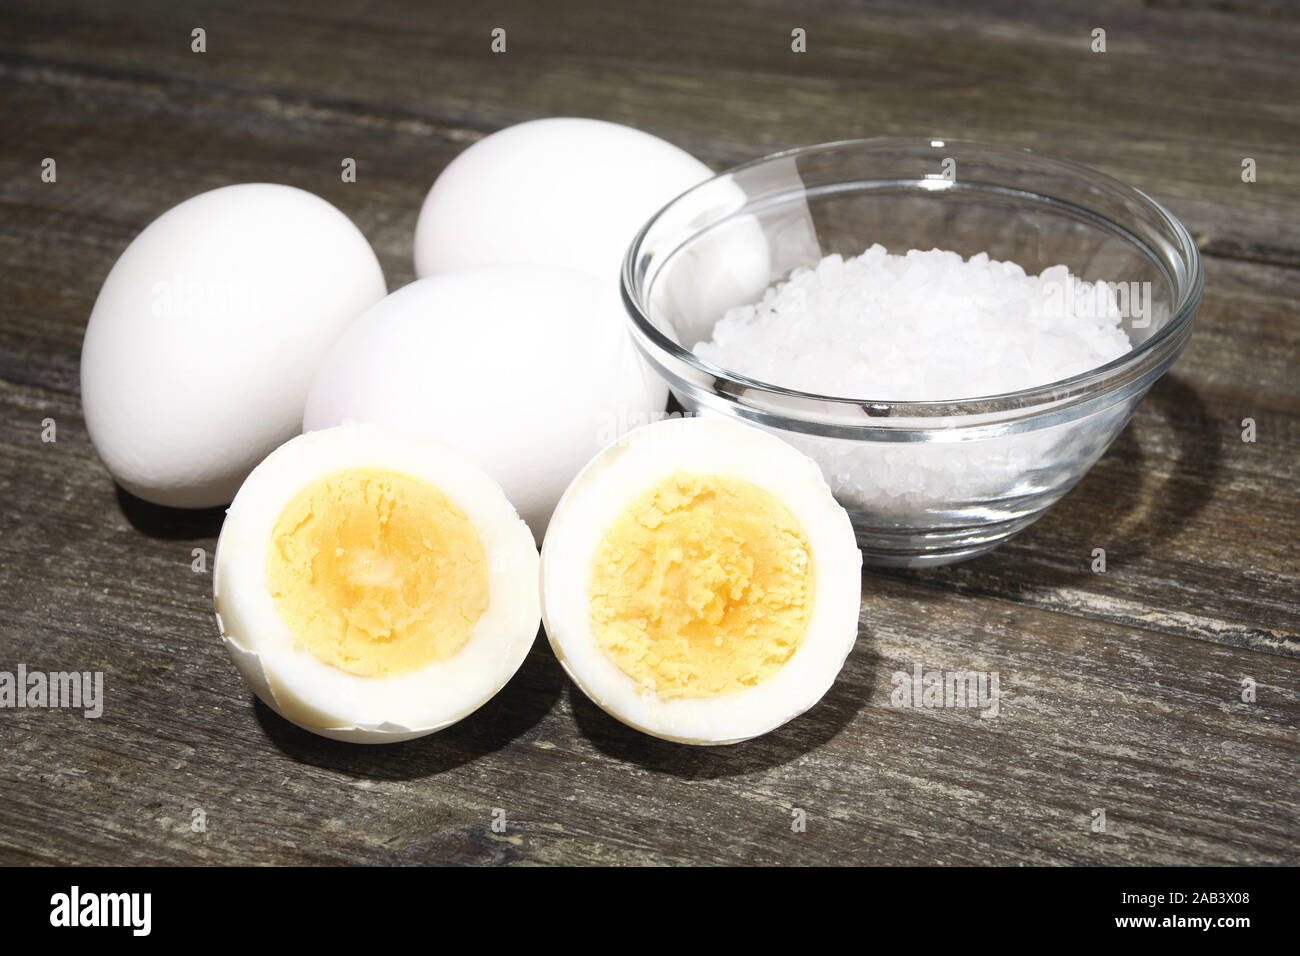 Gekochte Eier und Salz |Boiled eggs and salt| Stock Photo